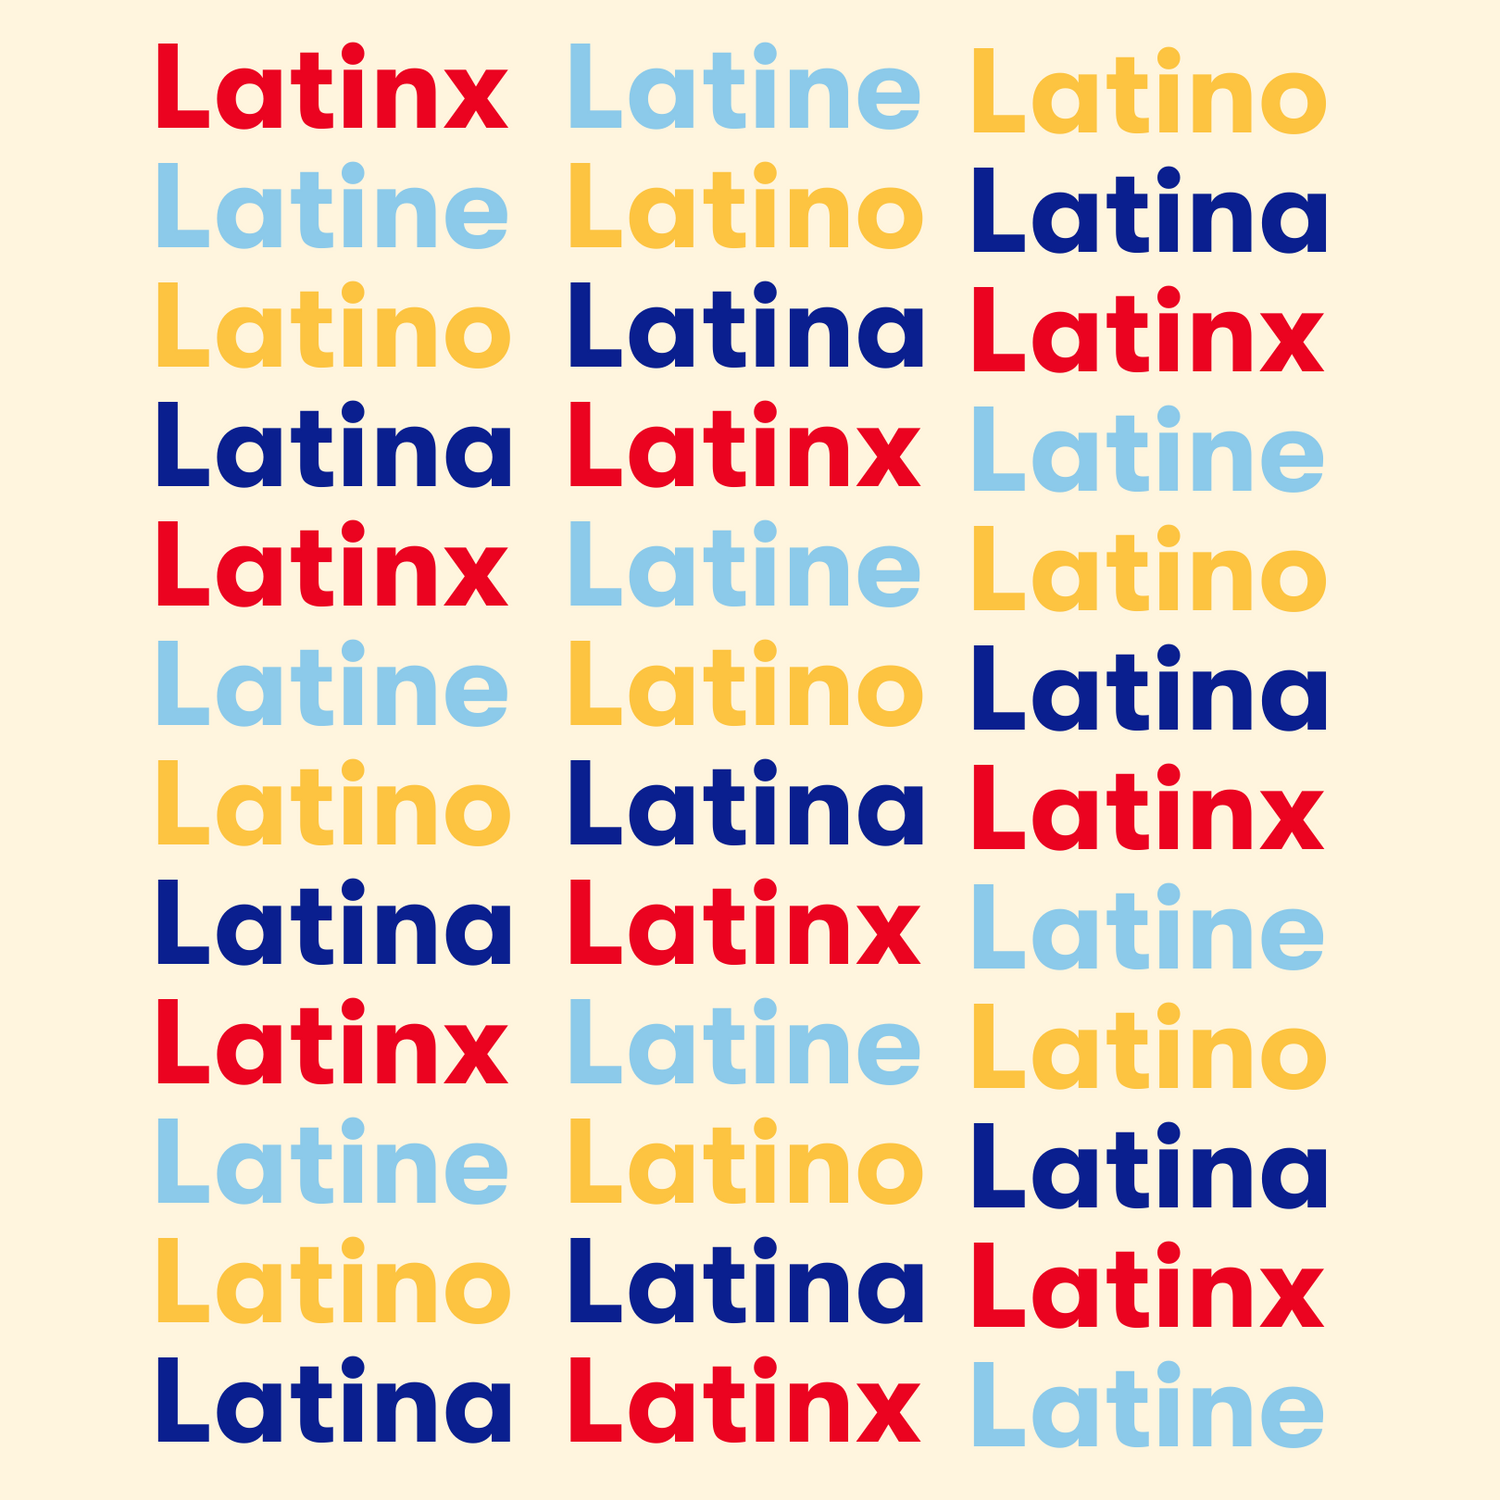 Nuestra Latinidad: Latinx, Latine & The Terms That Describe Us